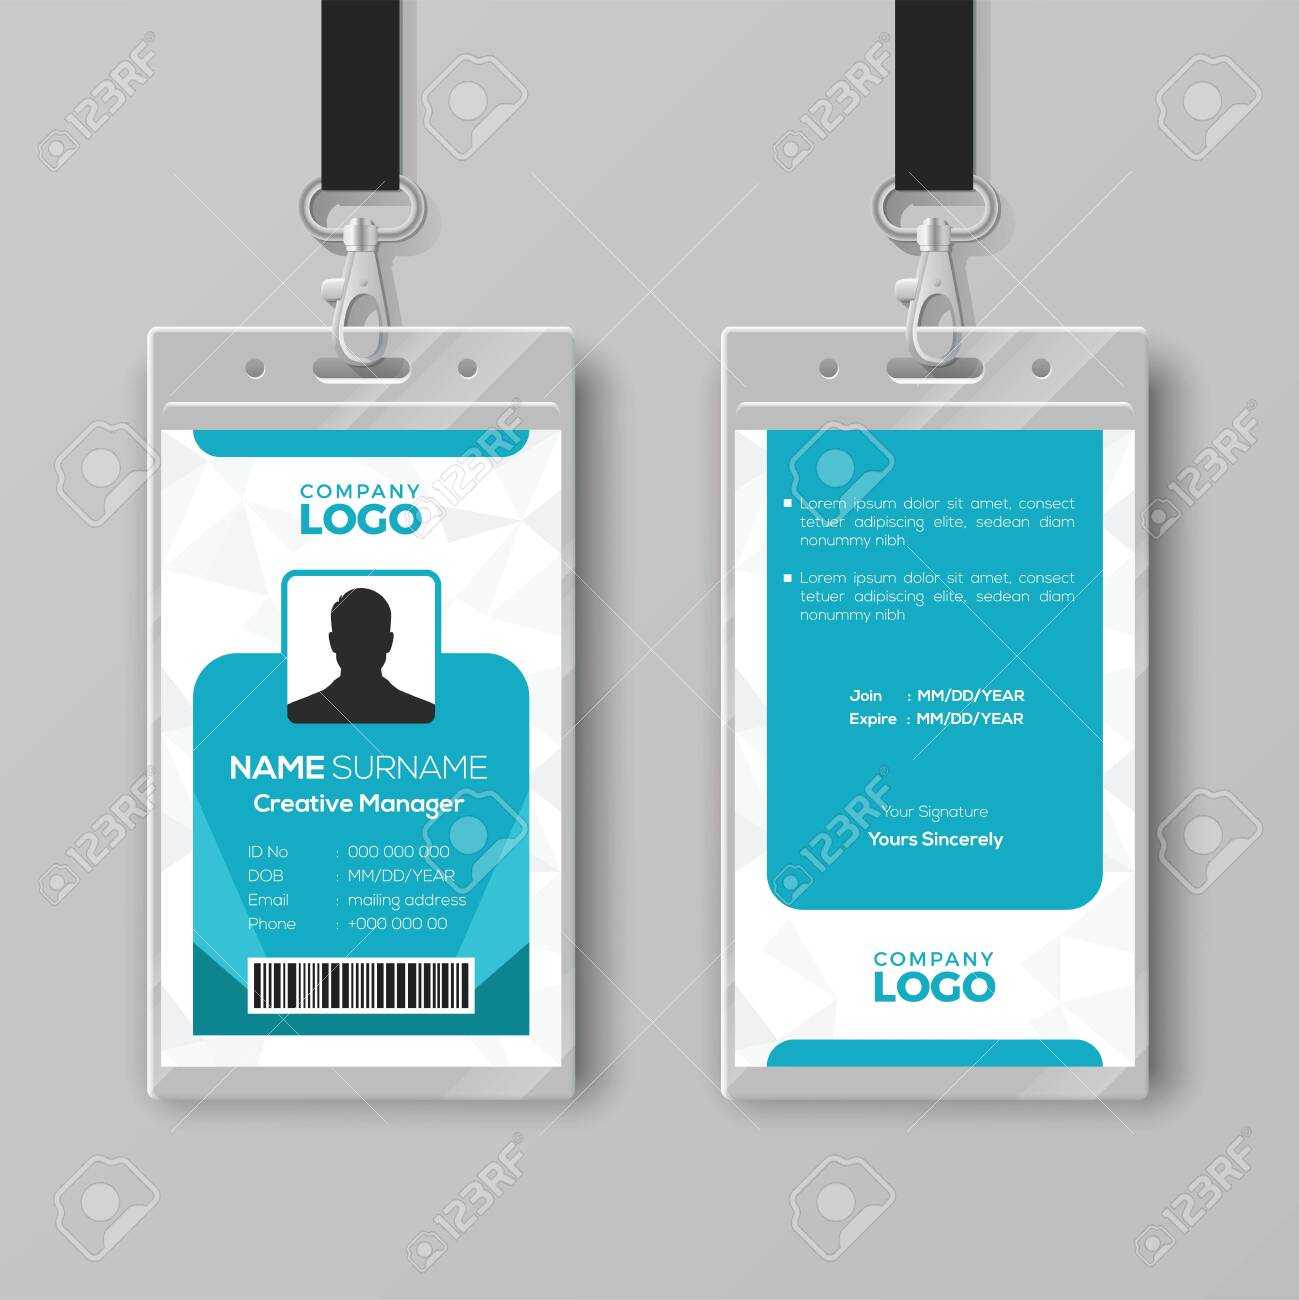 Corporate Id Card Design Template Regarding Company Id Card Design Template